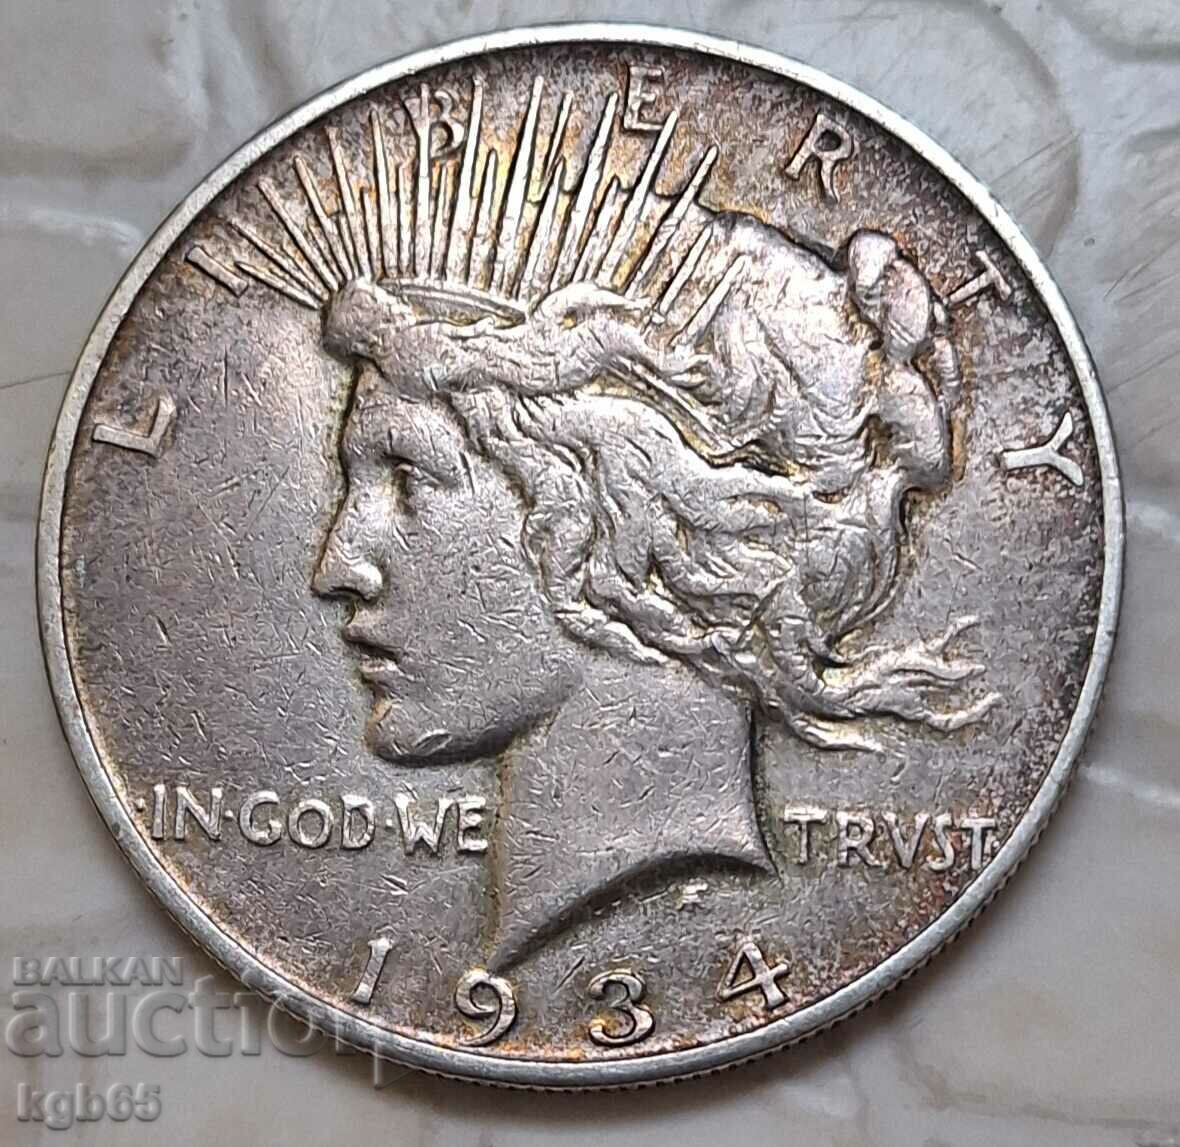 1 δολάριο 1934 ΗΠΑ